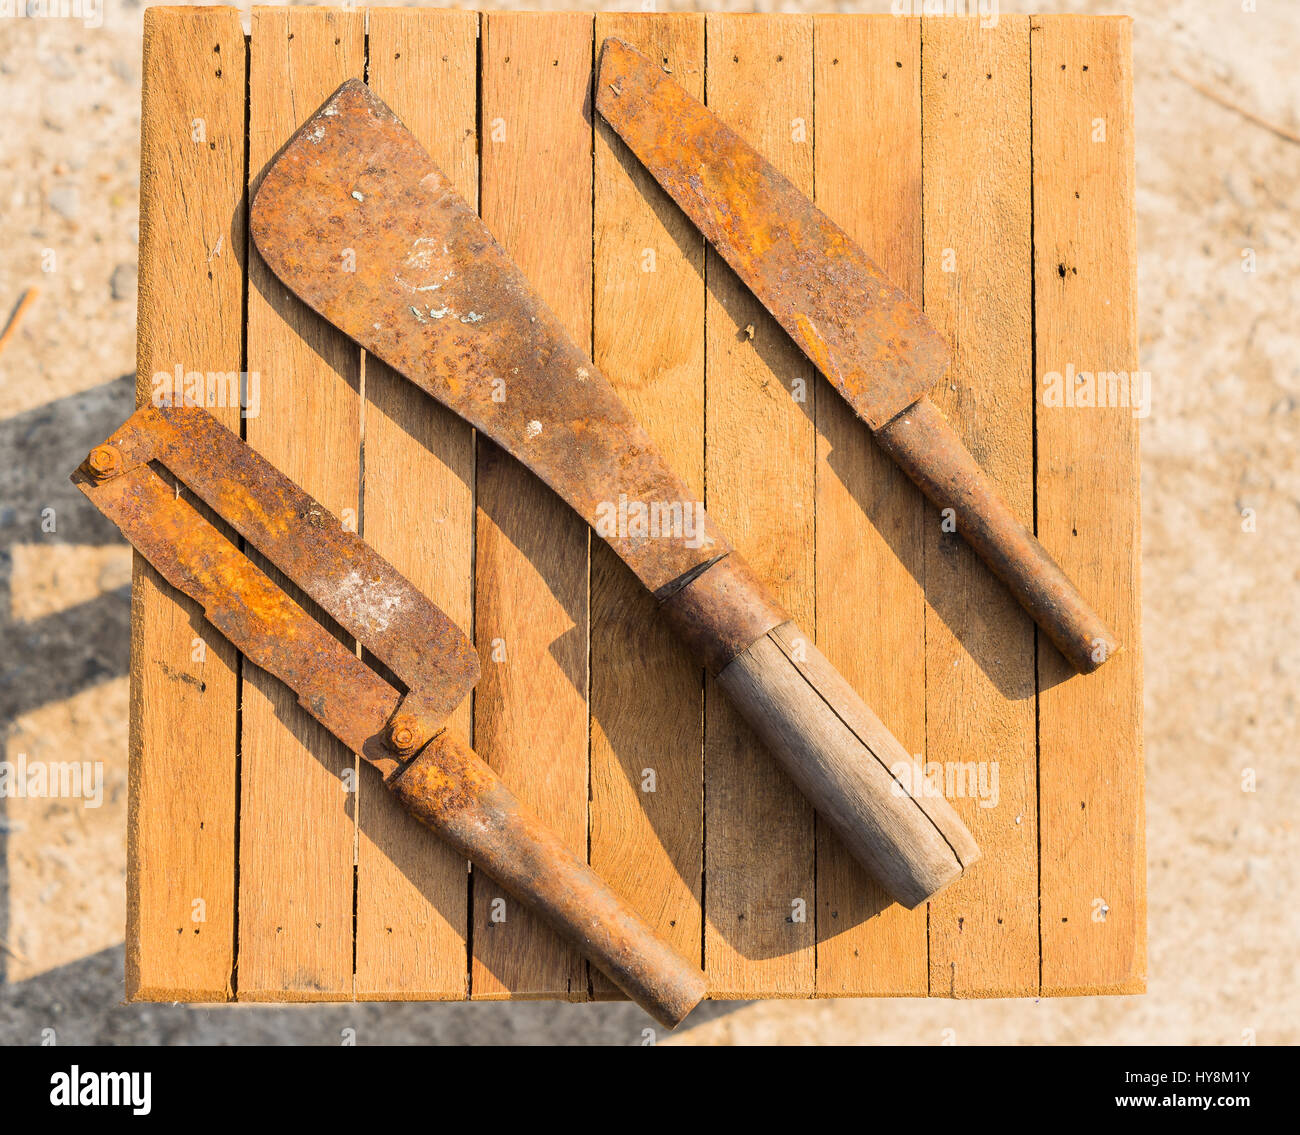 Rostige Messer auf Holz-Fliesen, Bauer Geräte in Thailand, Top View Fleischerbeil mit Fleischermesser Stockfoto